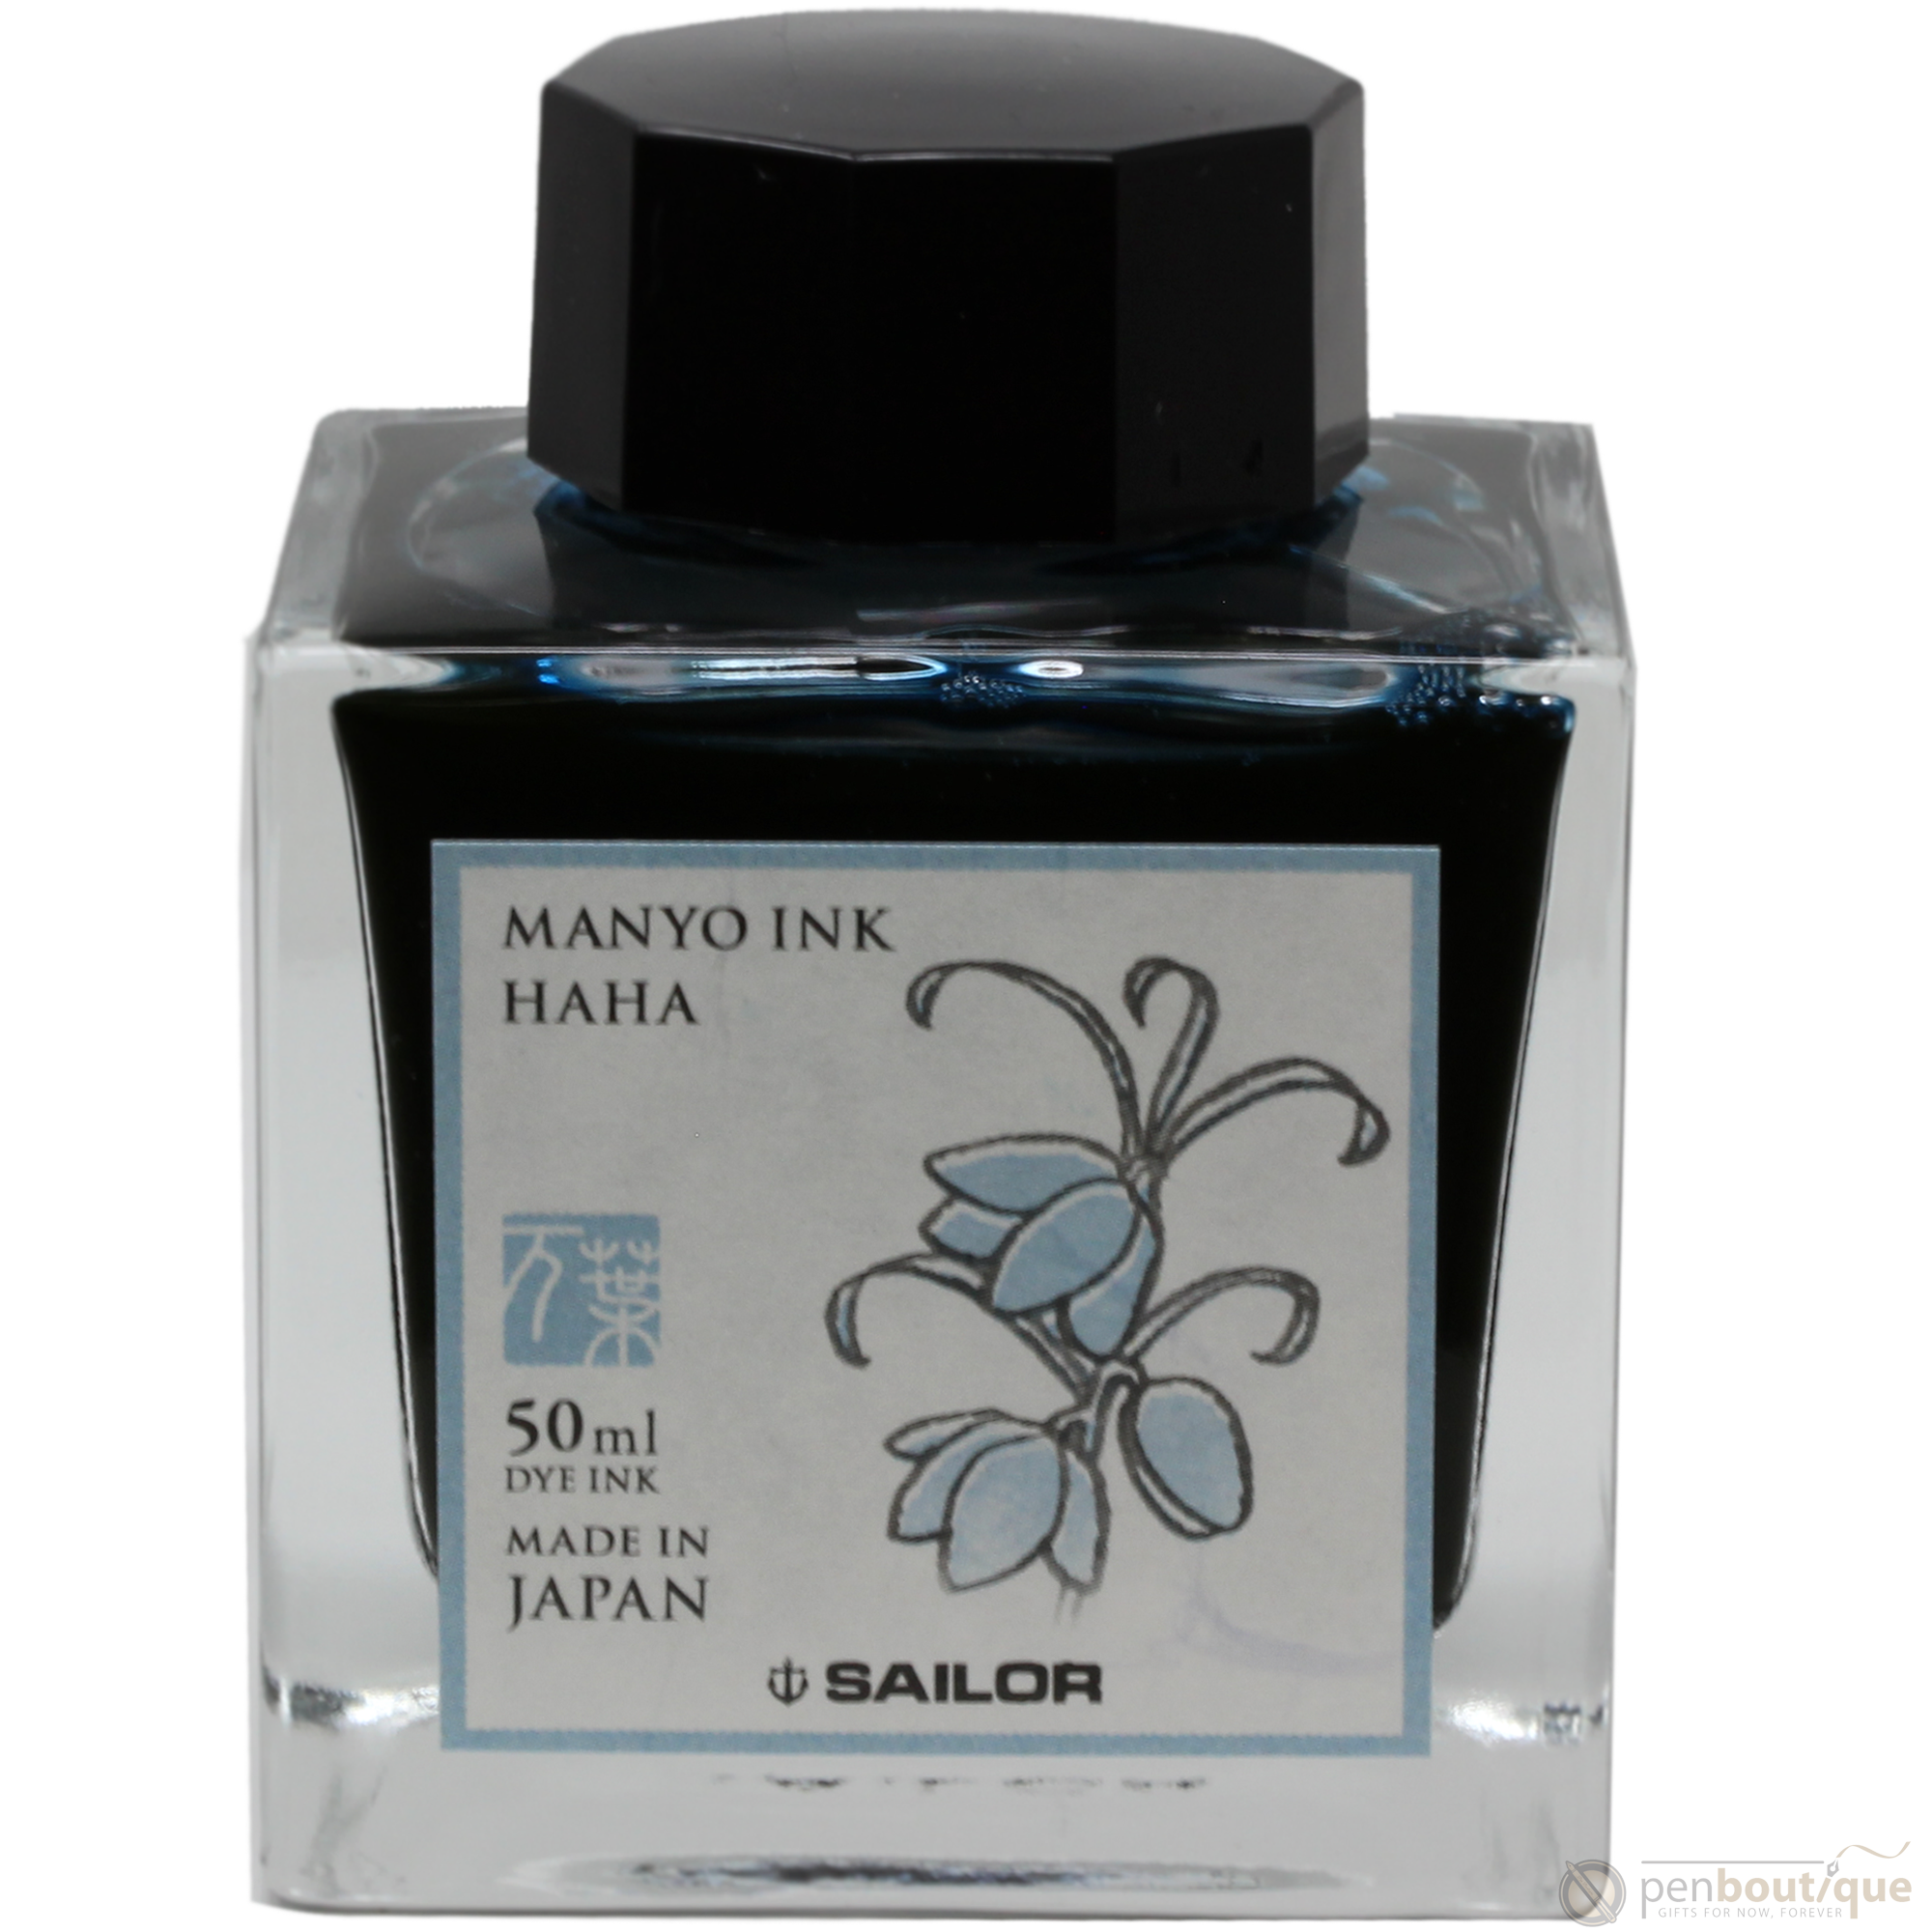 Sailor Manyo Ink Bottle - Haha - 50ml-Pen Boutique Ltd